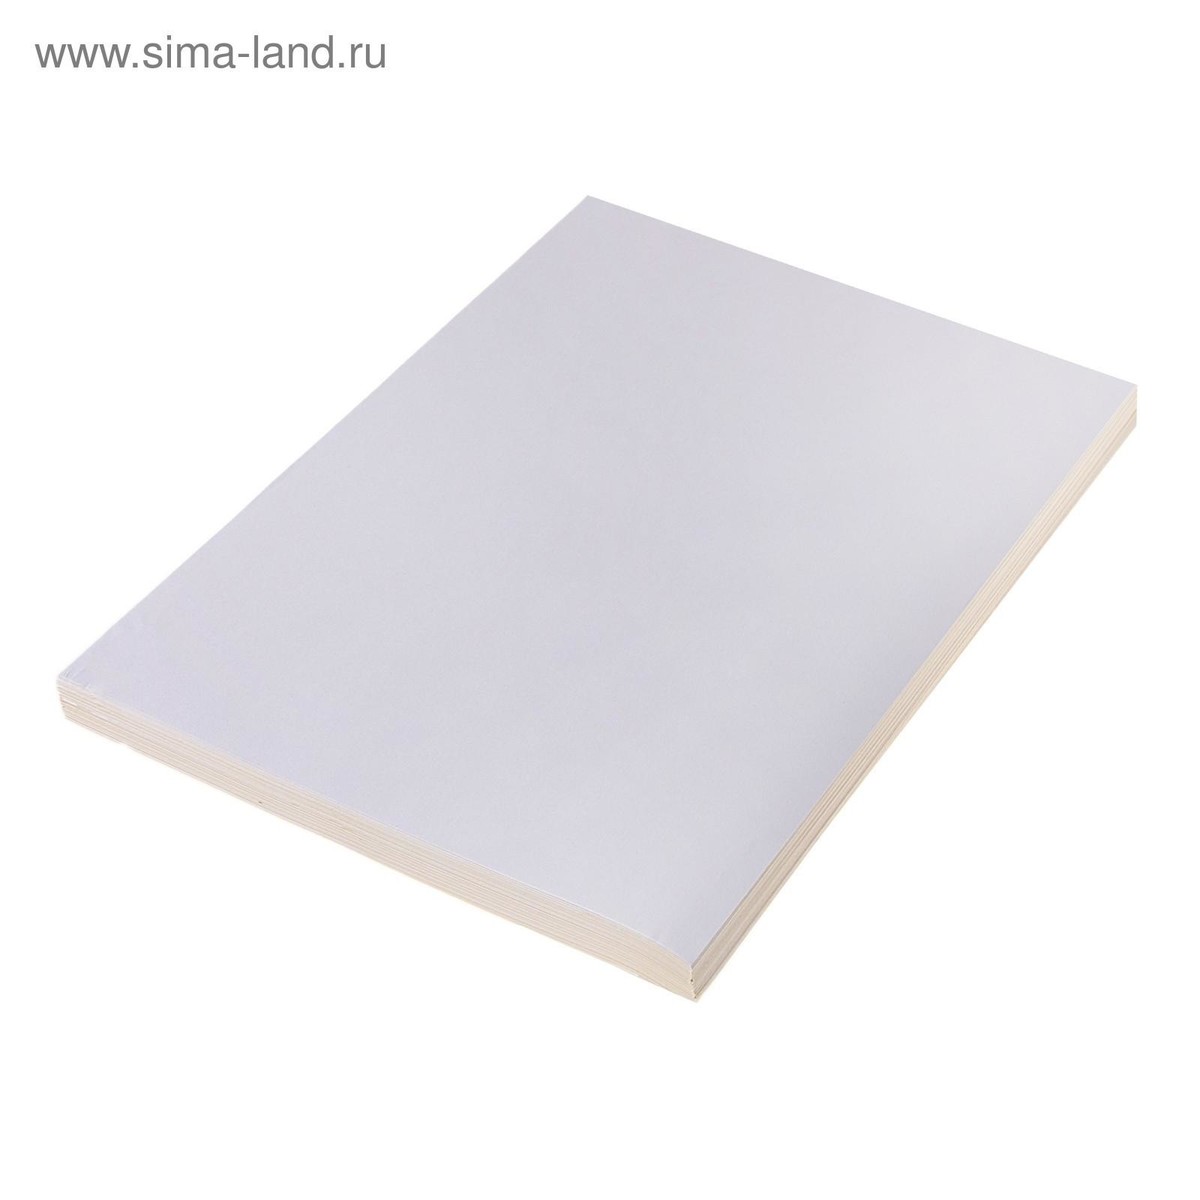 Бумага а4, 50 листов, 80 г/м, самоклеящаяся белая матовая краска воднодисперсионная ореол дисконт латексная интерьерная матовая белая 13 кг